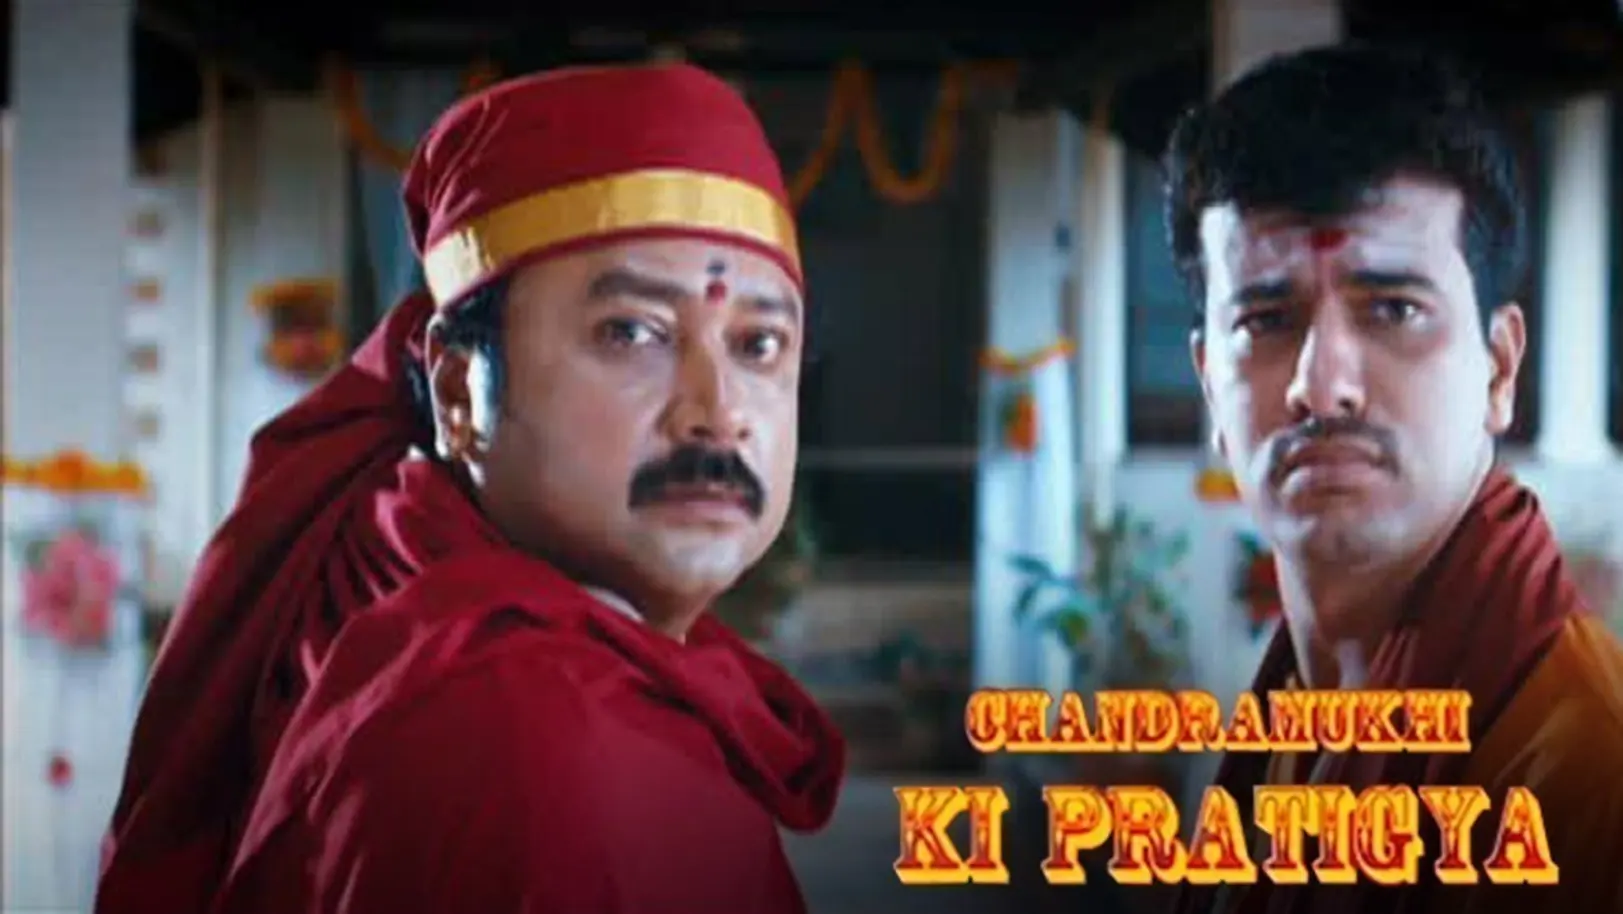 Chandramukhi Ki Pratigya Movie